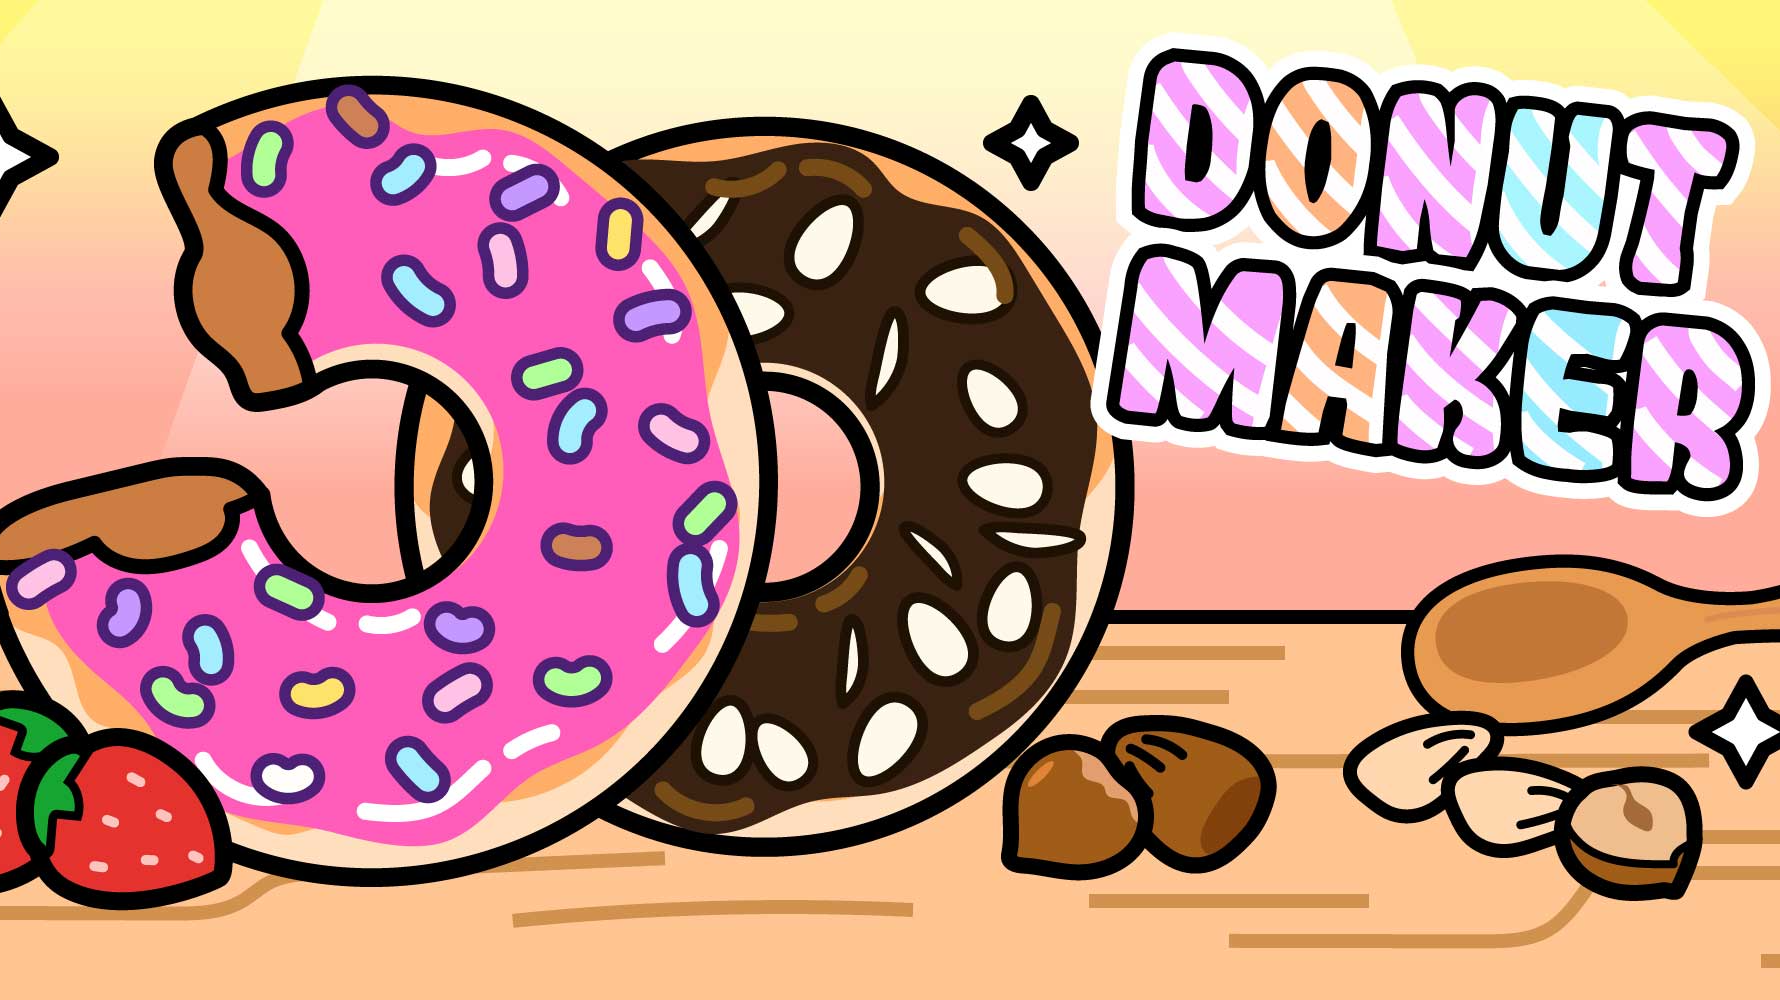 Donut Maker Game Image